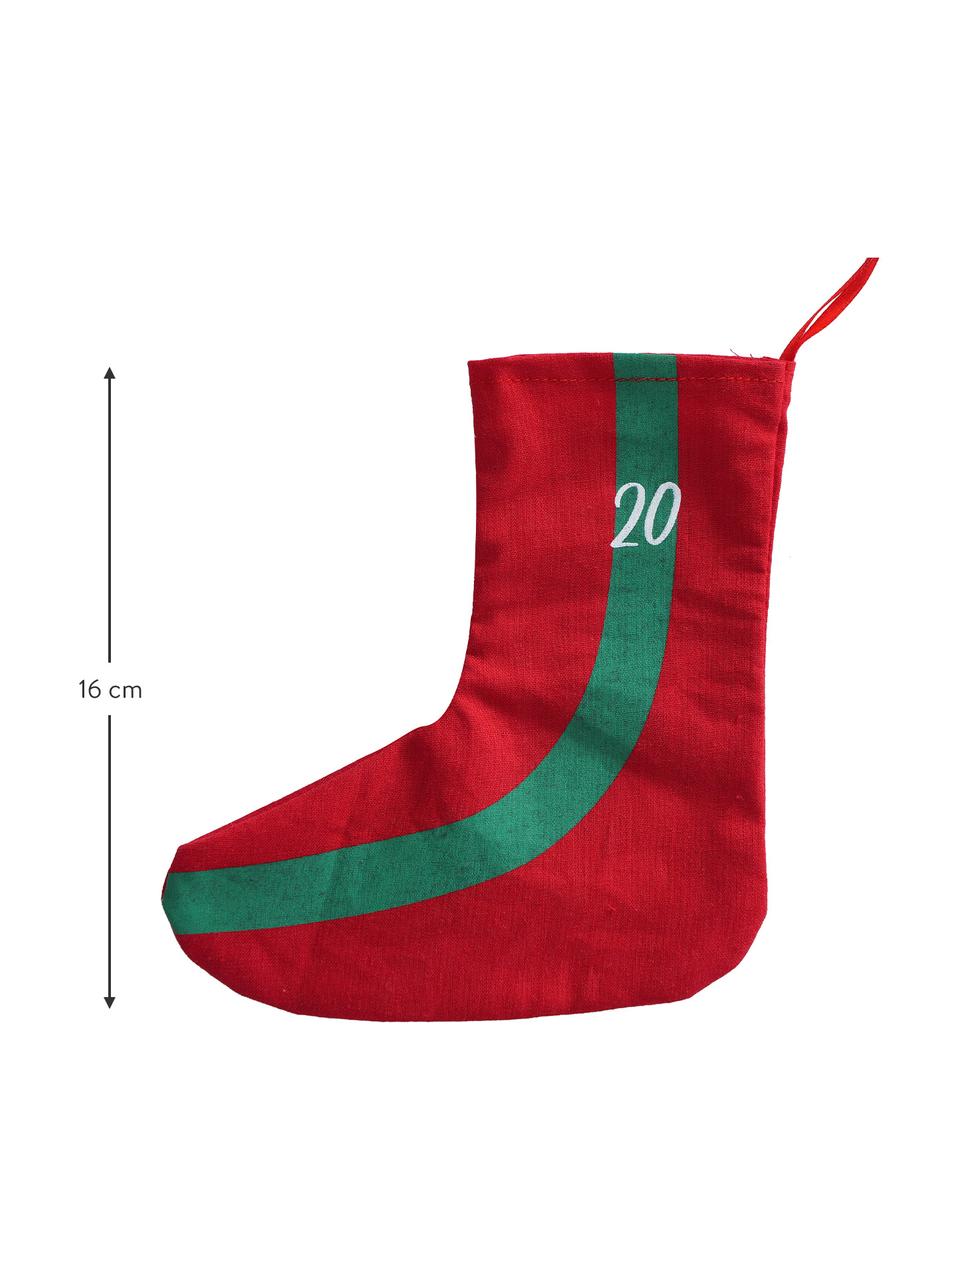 Kalendarz adwentowy Socky, 280 cm, Filc, Zielony, czerwony, biały, D 280 cm